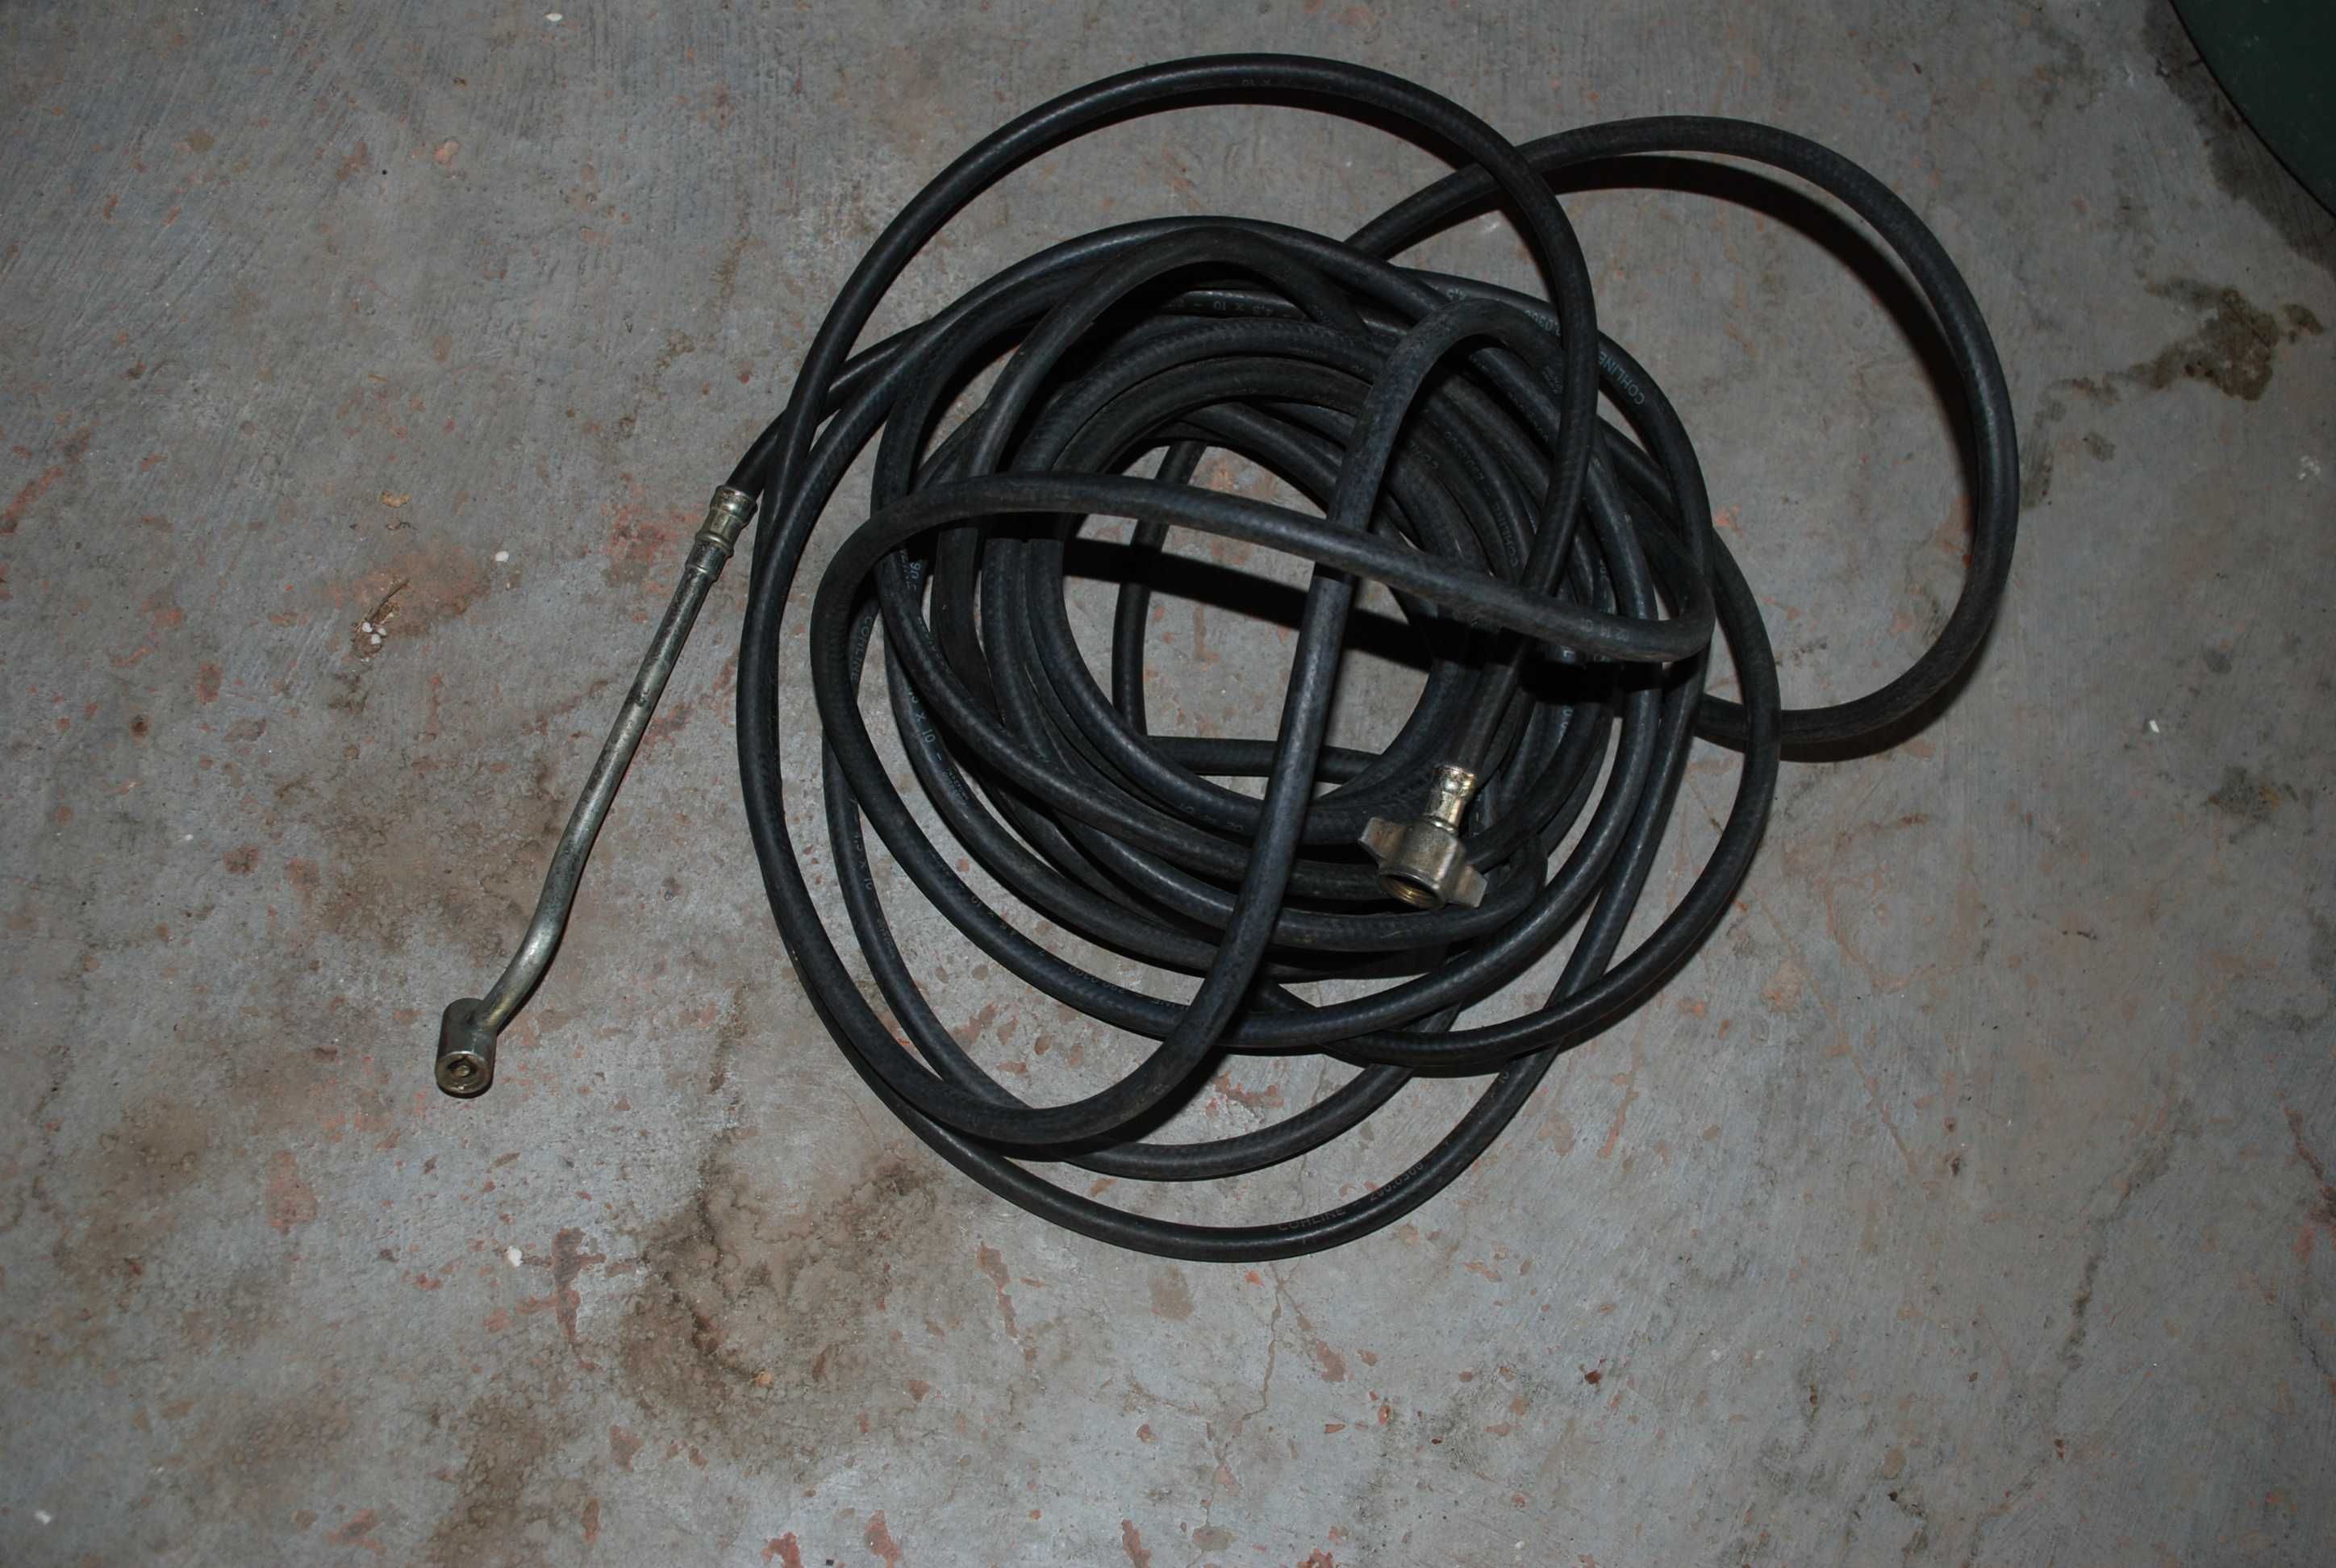 Cablu electric spiralat adaptor priza, auto15/7/7, mufa 7 / 24v,9 3.5m